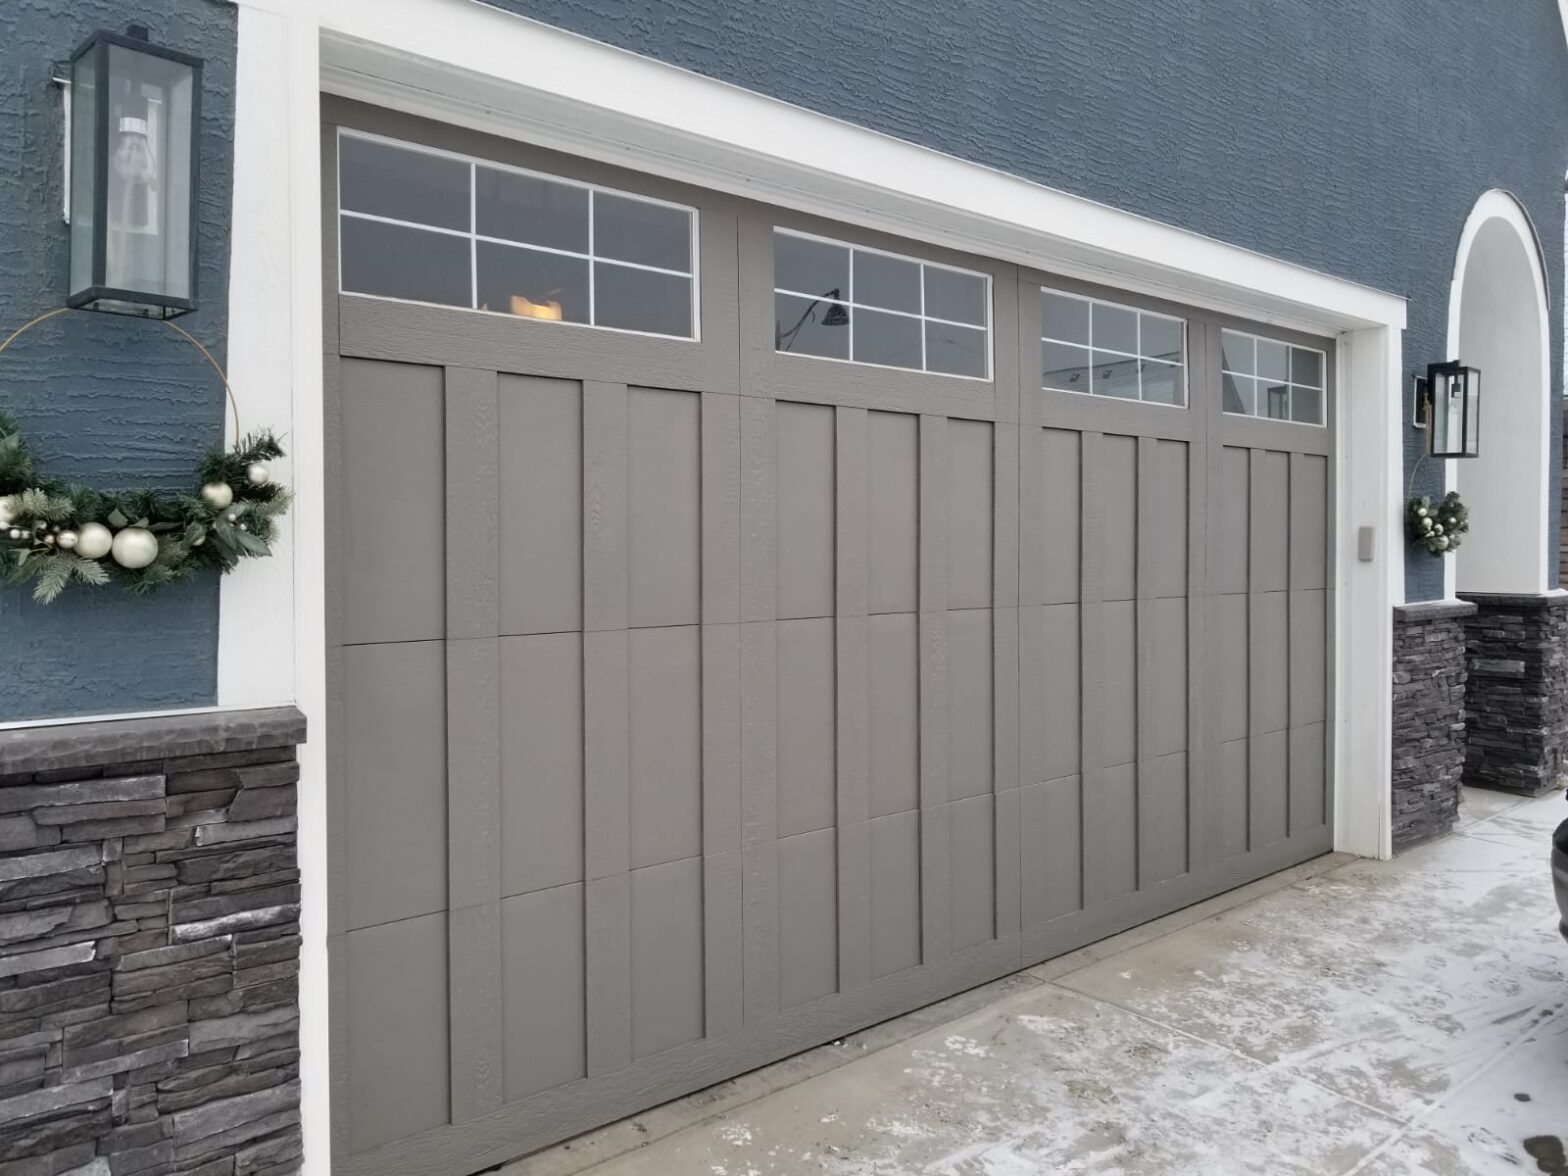 Can Garage Door Open by Itself? Calgary Garage Door Fix